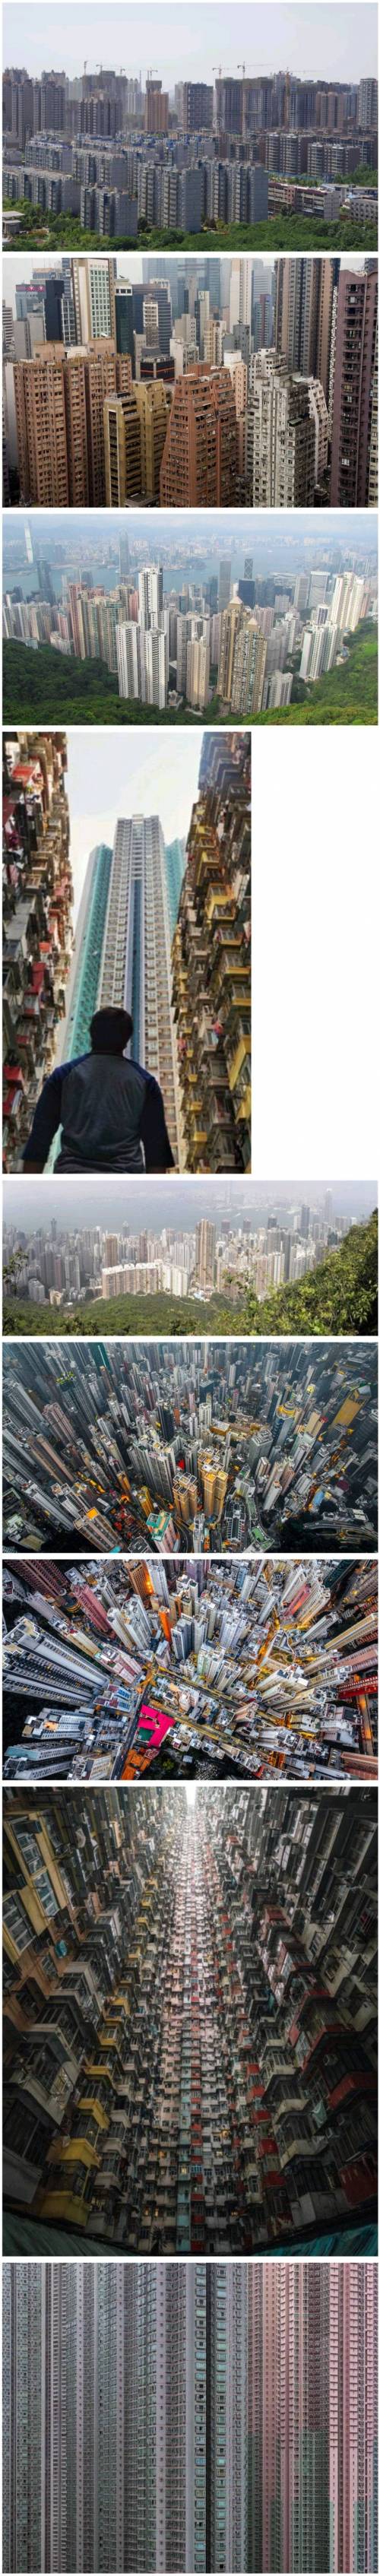 [스압] 용적률 500~1500% 의 홍콩 아파트들.jpg